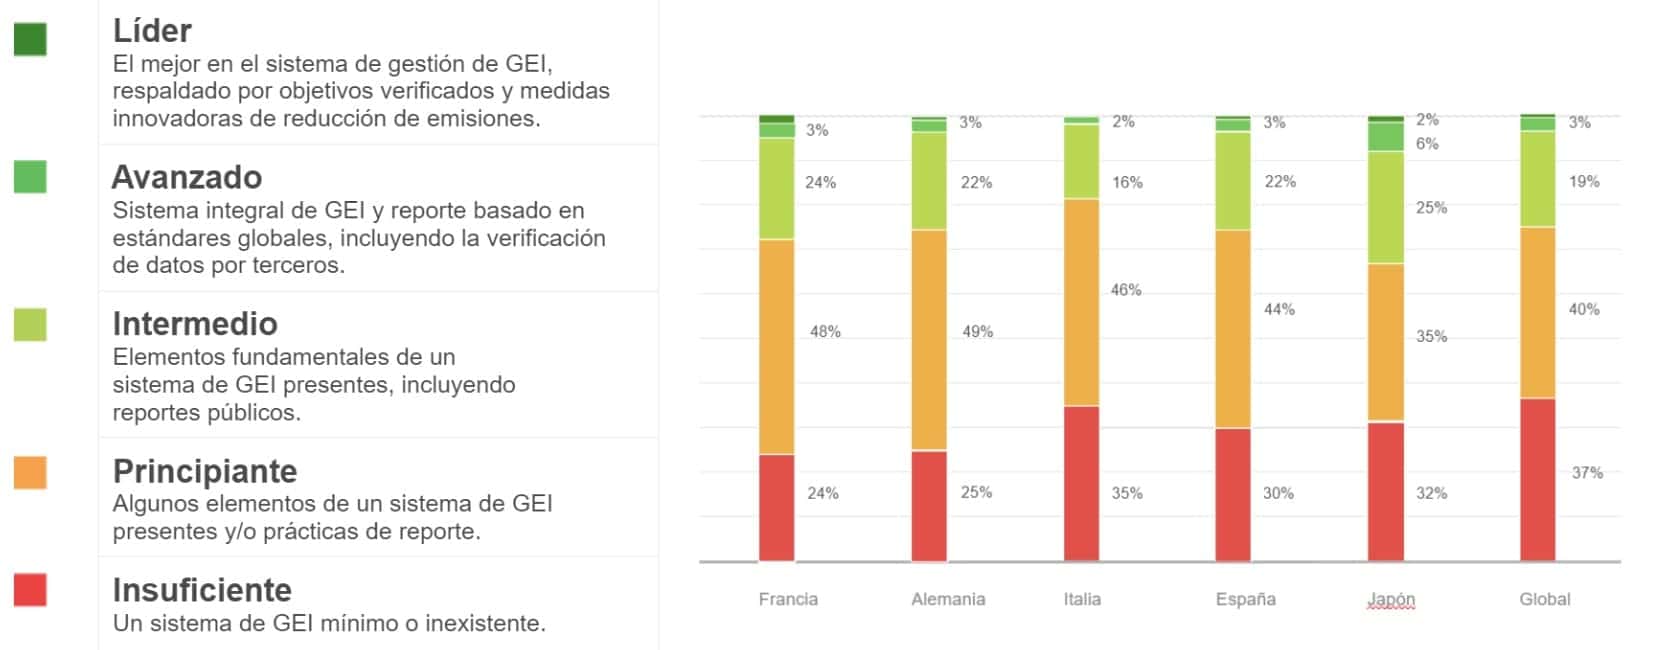 Hacia la descarbonización de las empresas: España se sitúa por delante de la media global 1